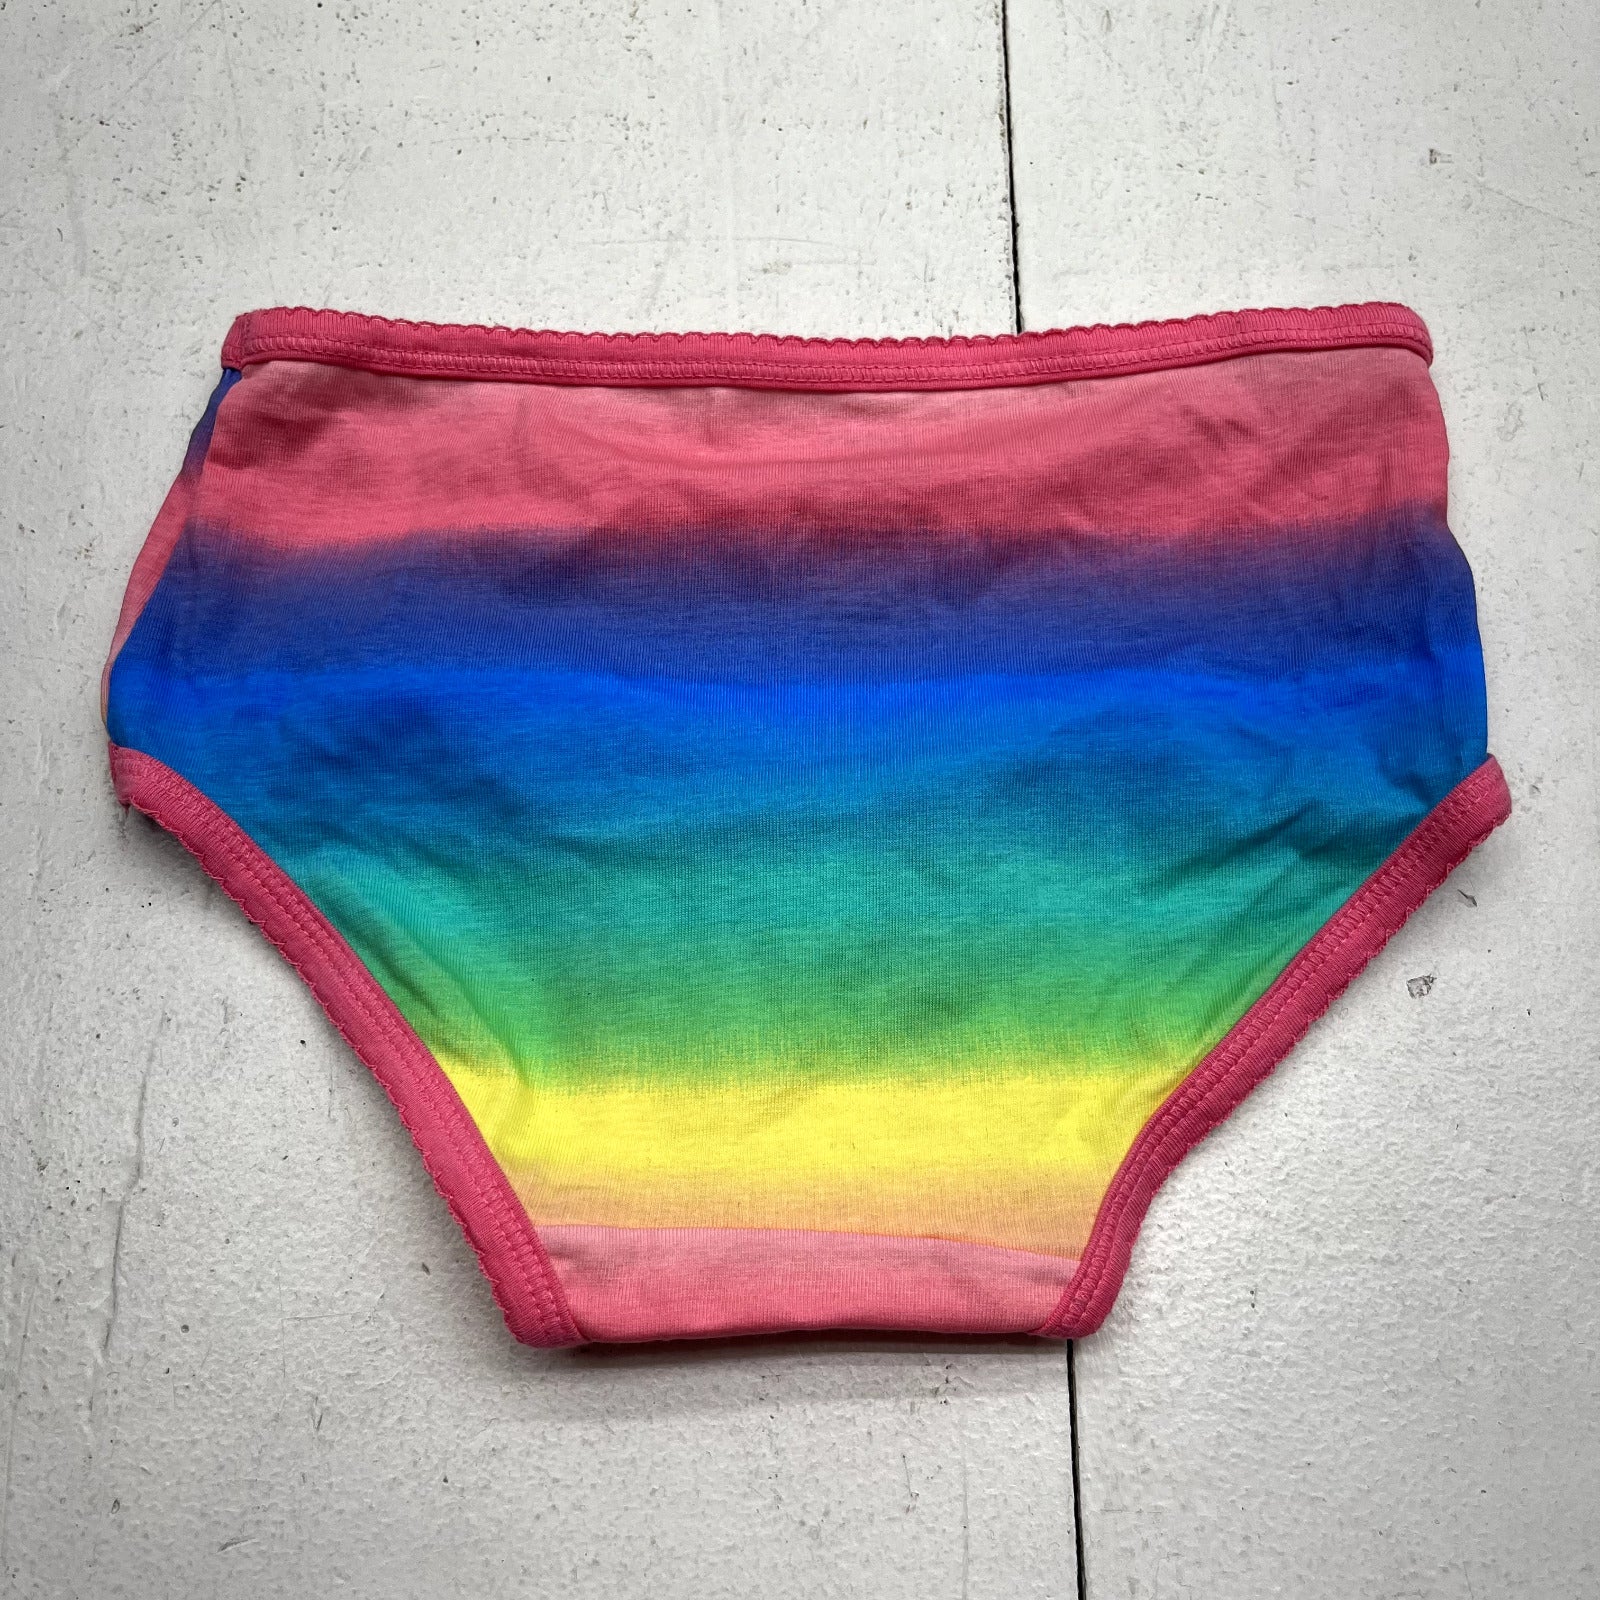 Carters Multicolored Brief Underwear Girls Size 8 NEW - beyond exchange